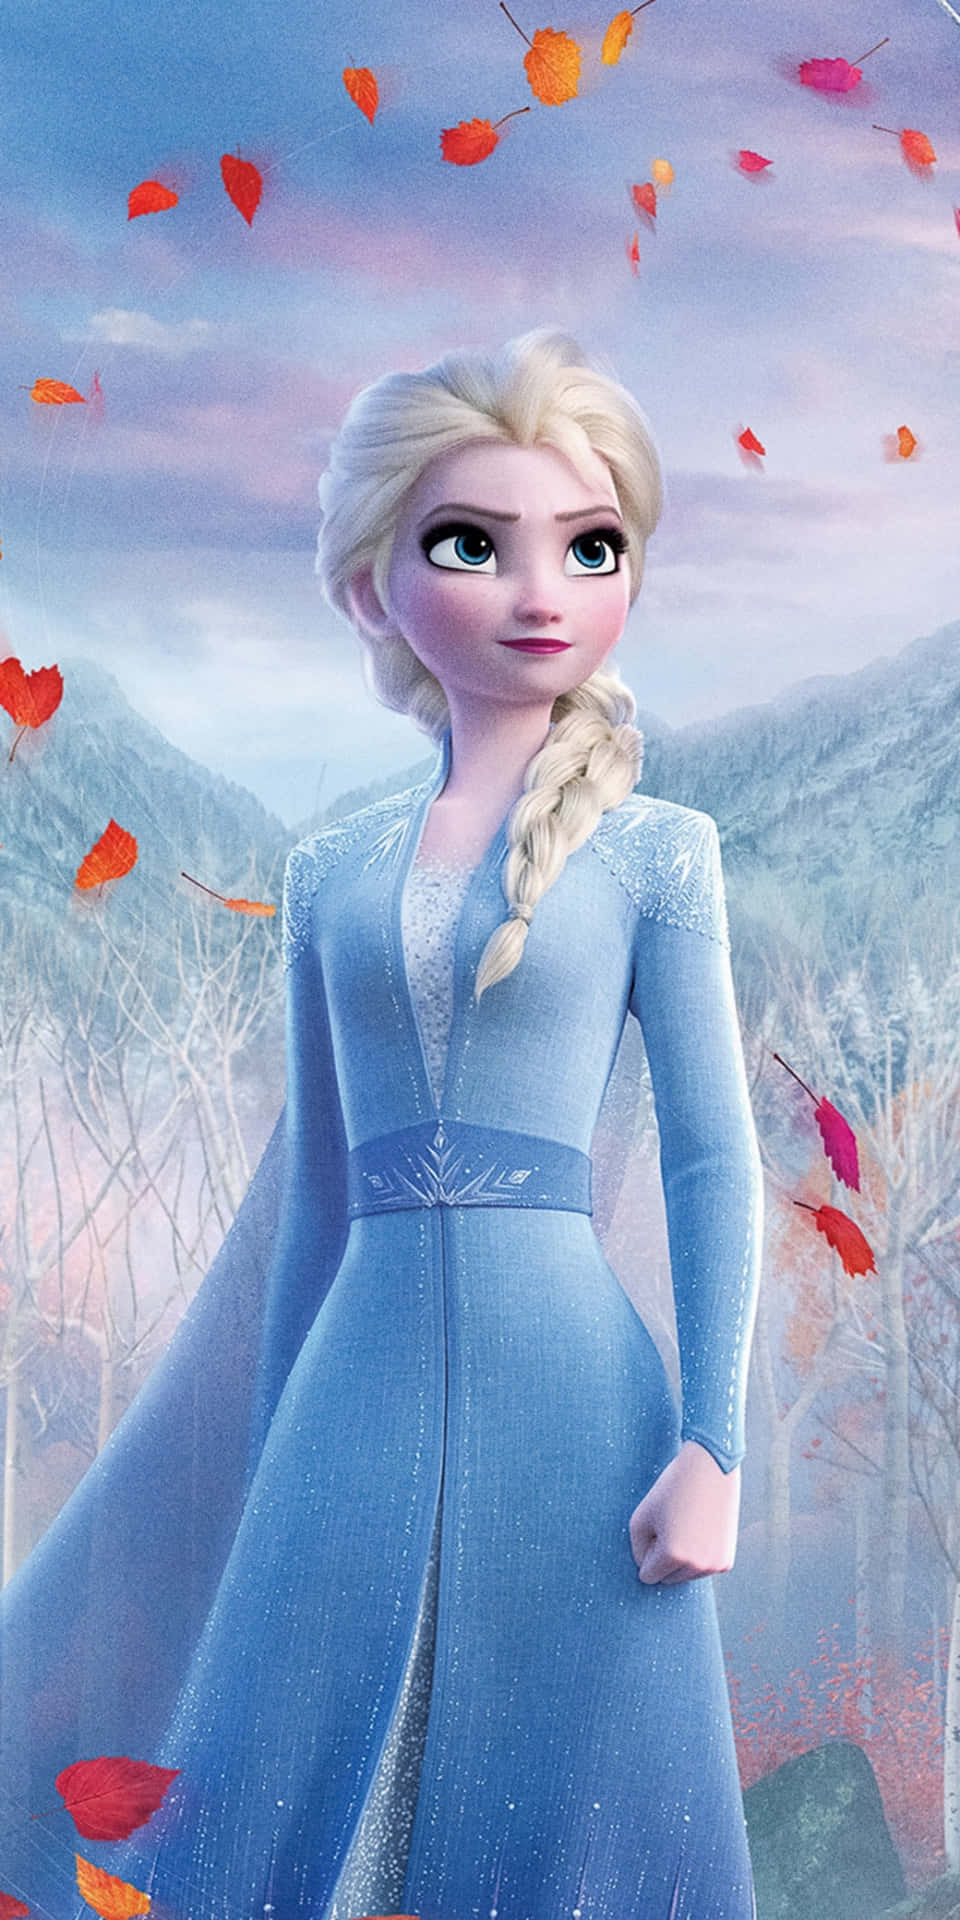 Imágenesde Elsa Con Vestido Azul Claro De Frozen.